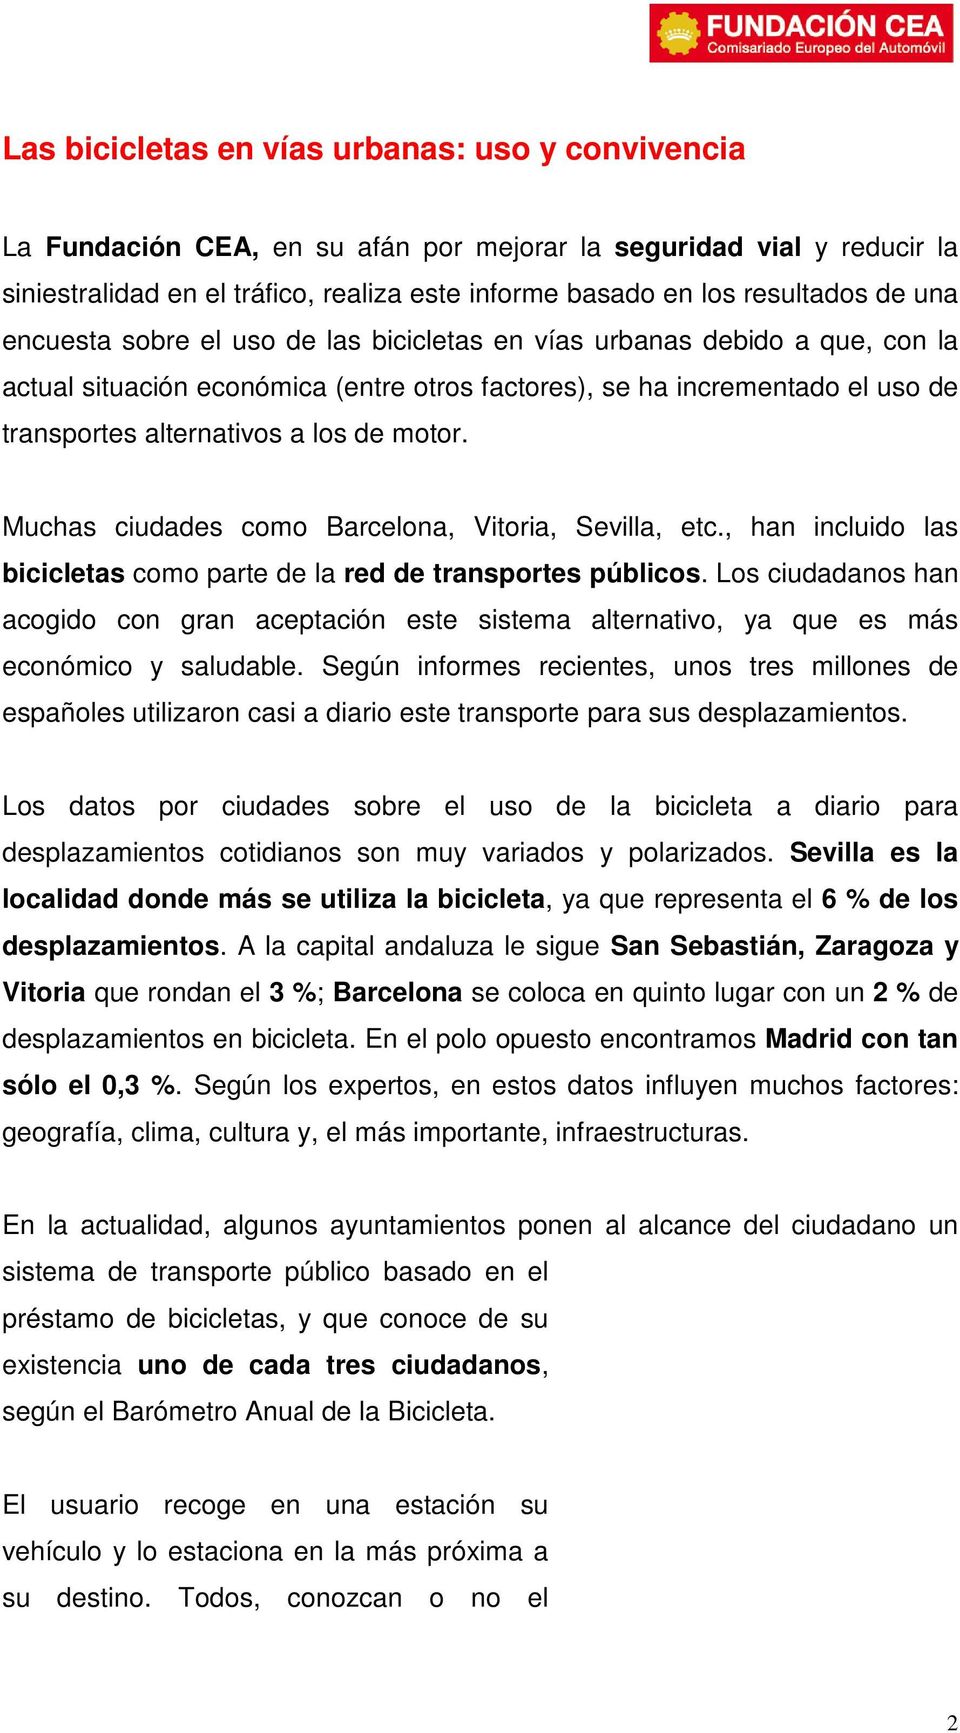 motor. Muchas ciudades como Barcelona, Vitoria, Sevilla, etc., han incluido las bicicletas como parte de la red de transportes públicos.